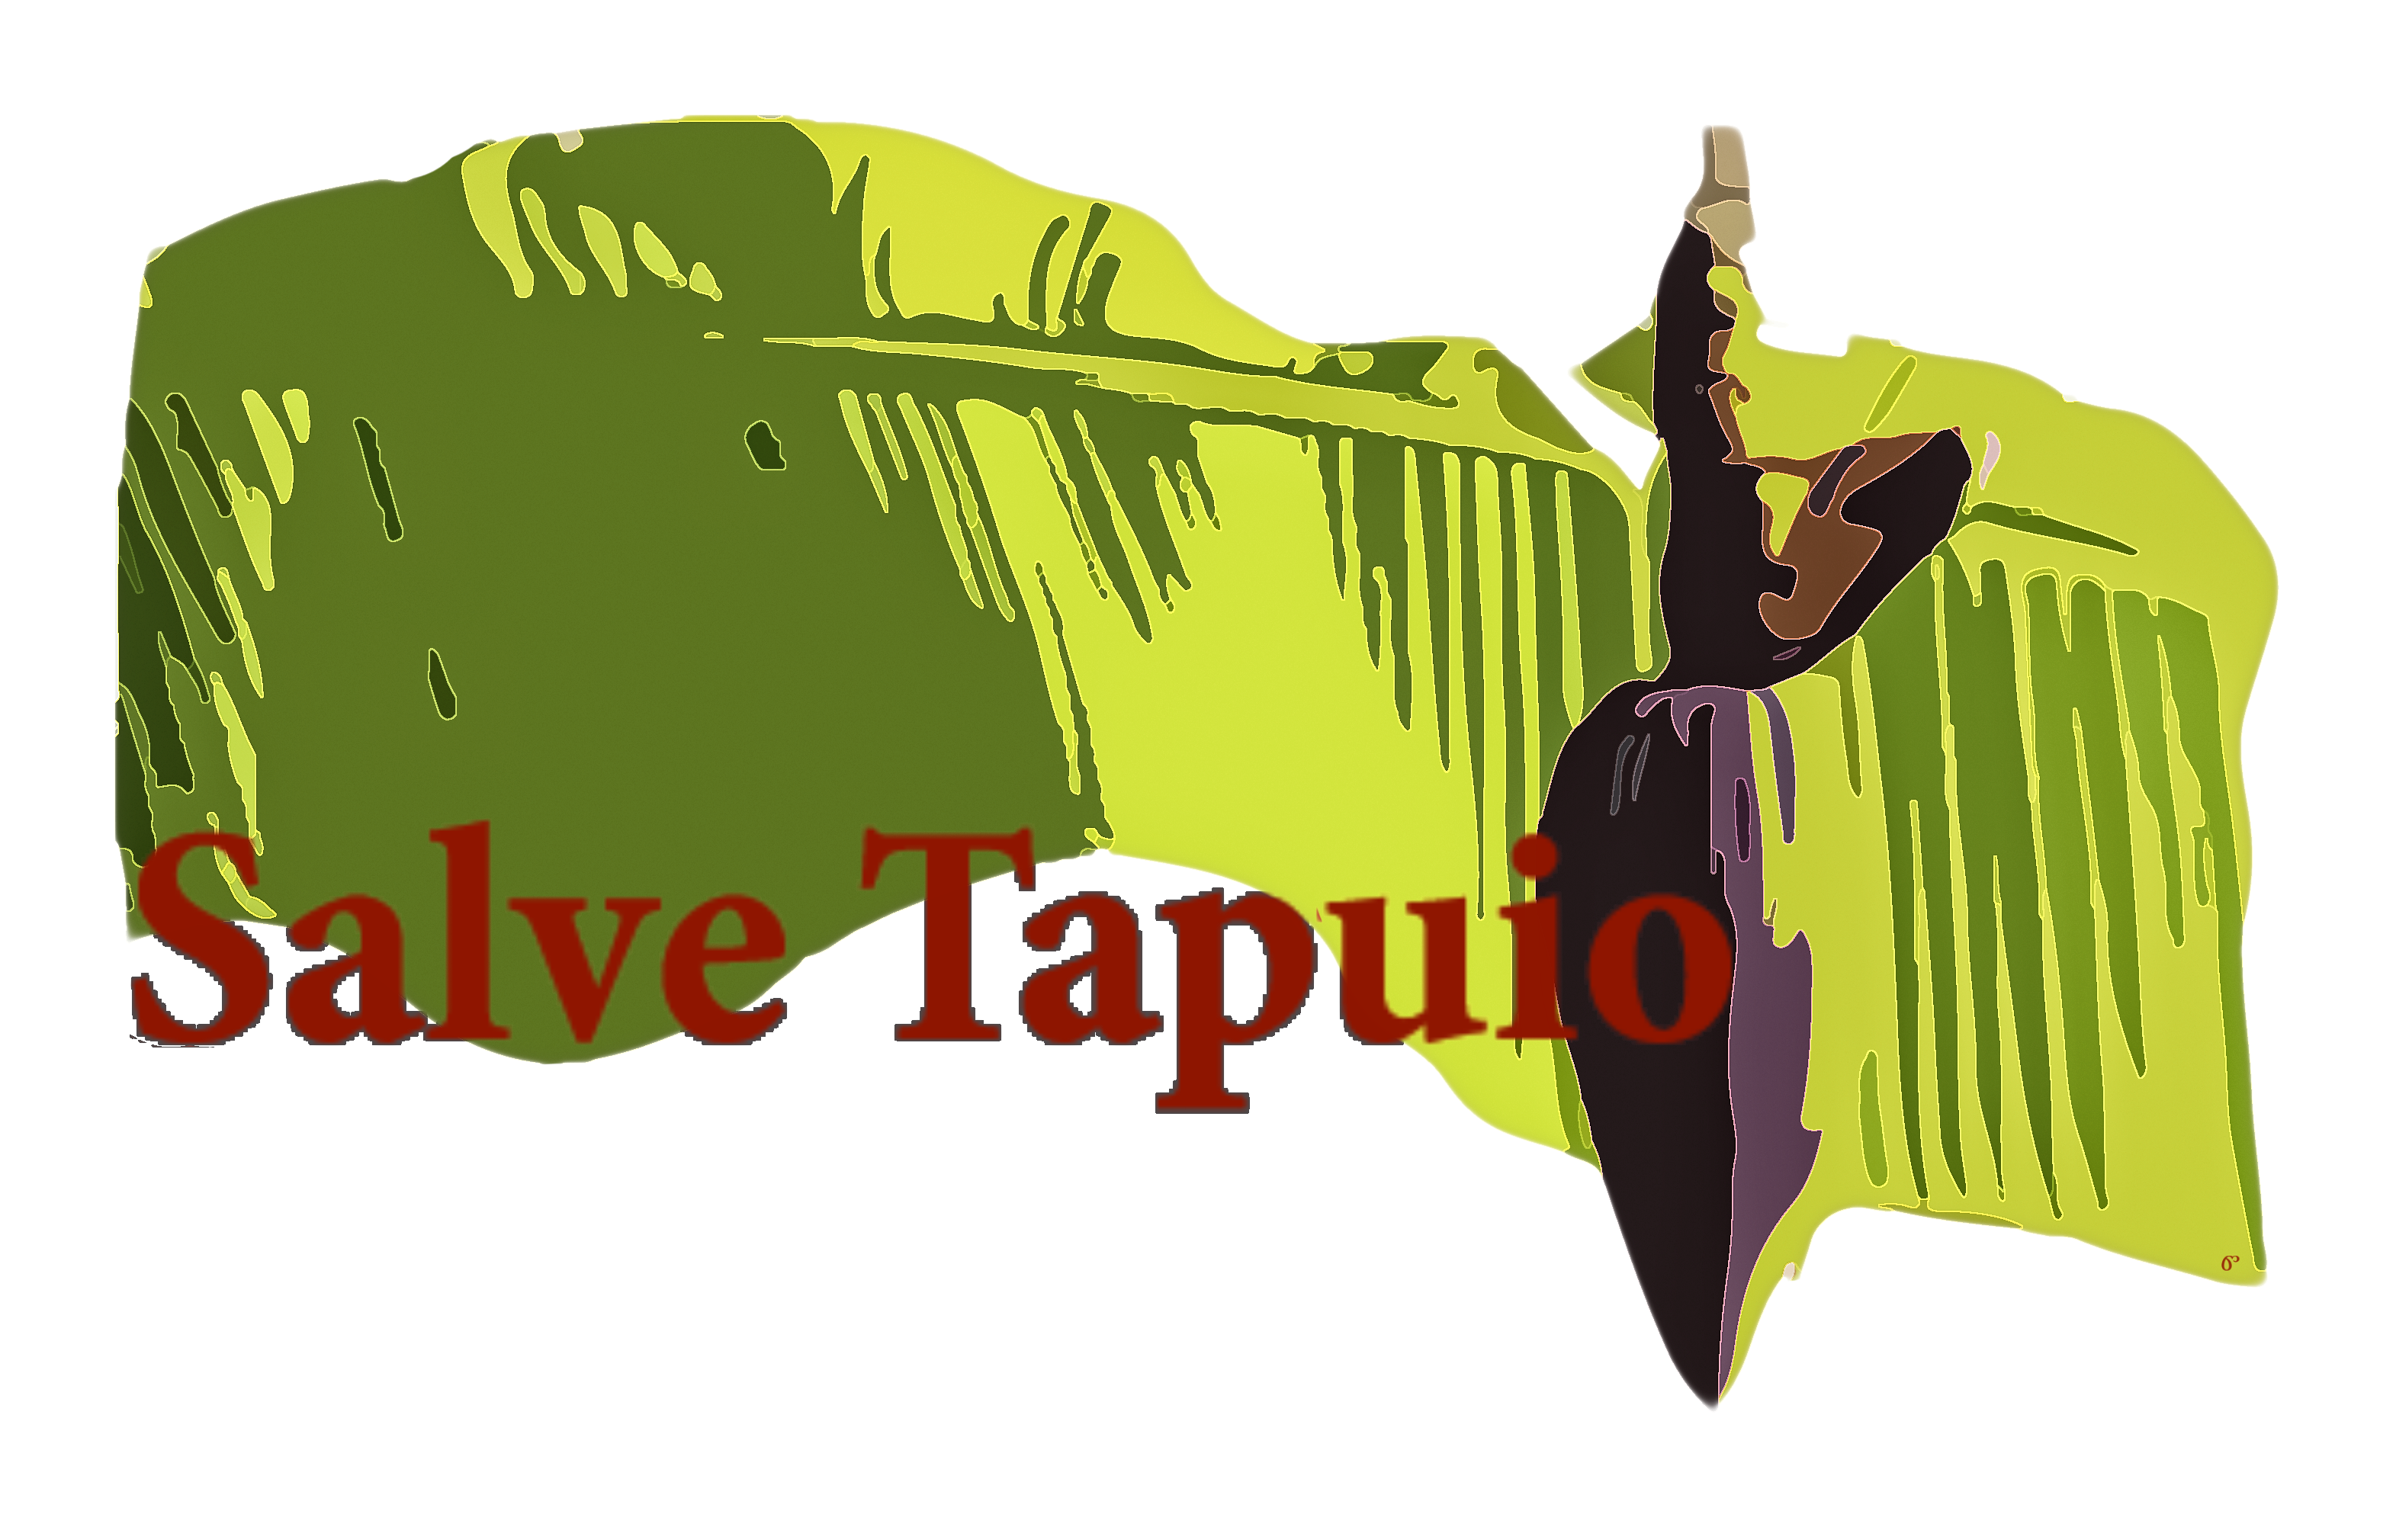 Salve Tapuio, caçadores, meio ambiente